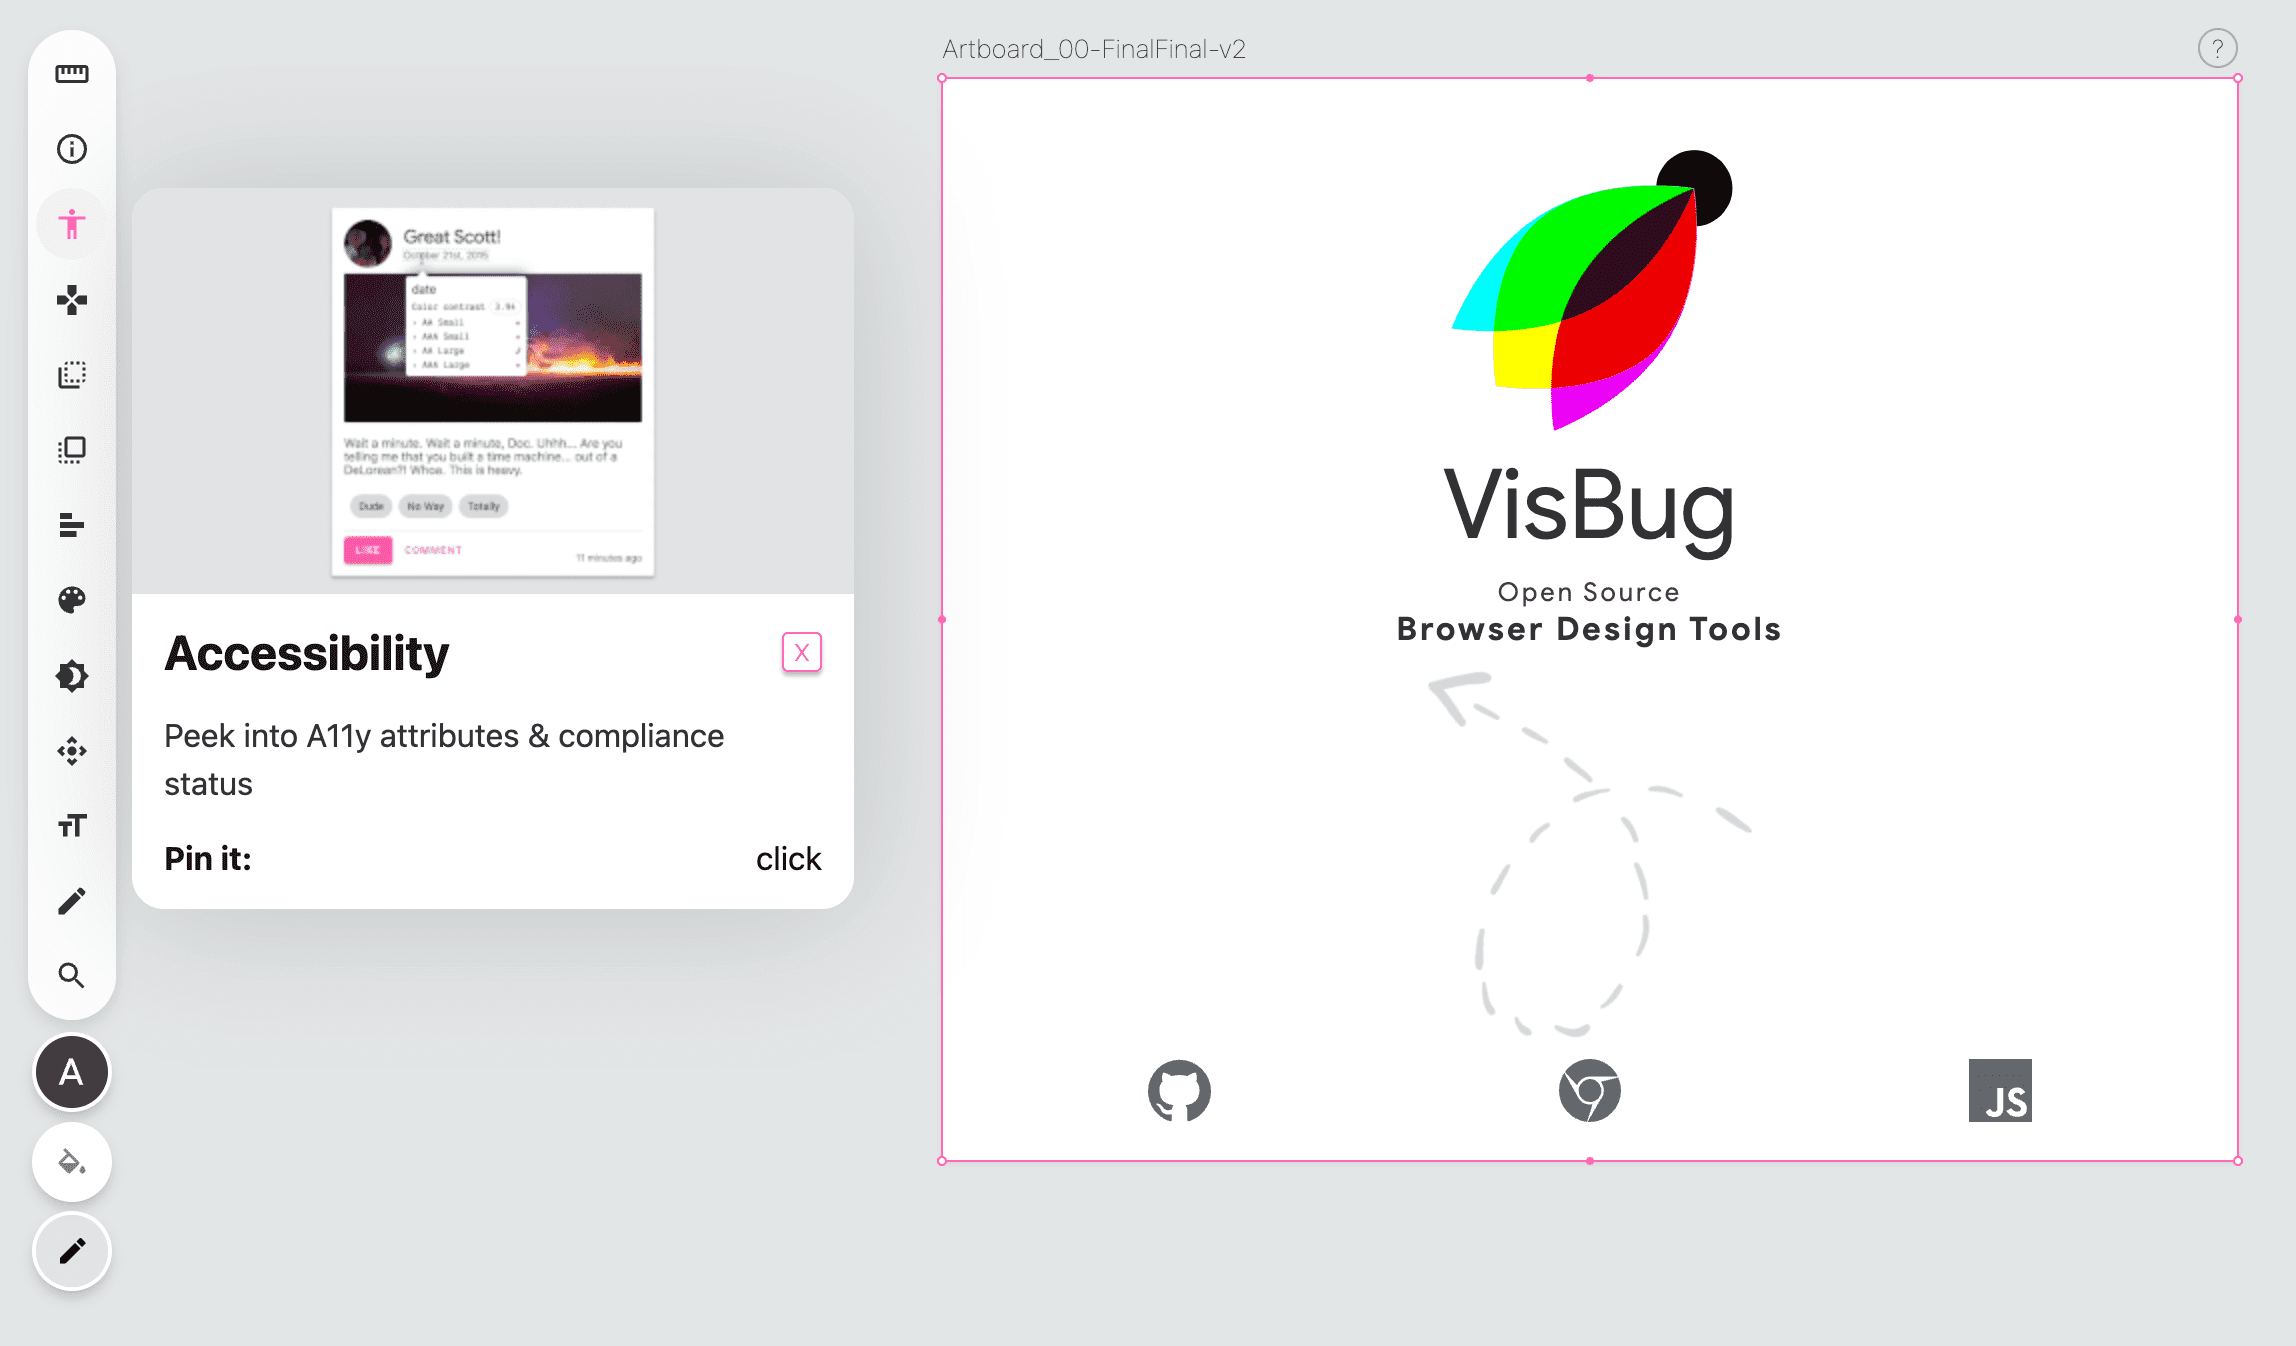 Zrzut ekranu pokazujący pasek narzędzi VisBug w lewej części pustej strony, z różową ikoną narzędzia ułatwień dostępu oraz widocznym wyskakujące okienko z instrukcjami obsługi narzędzia.